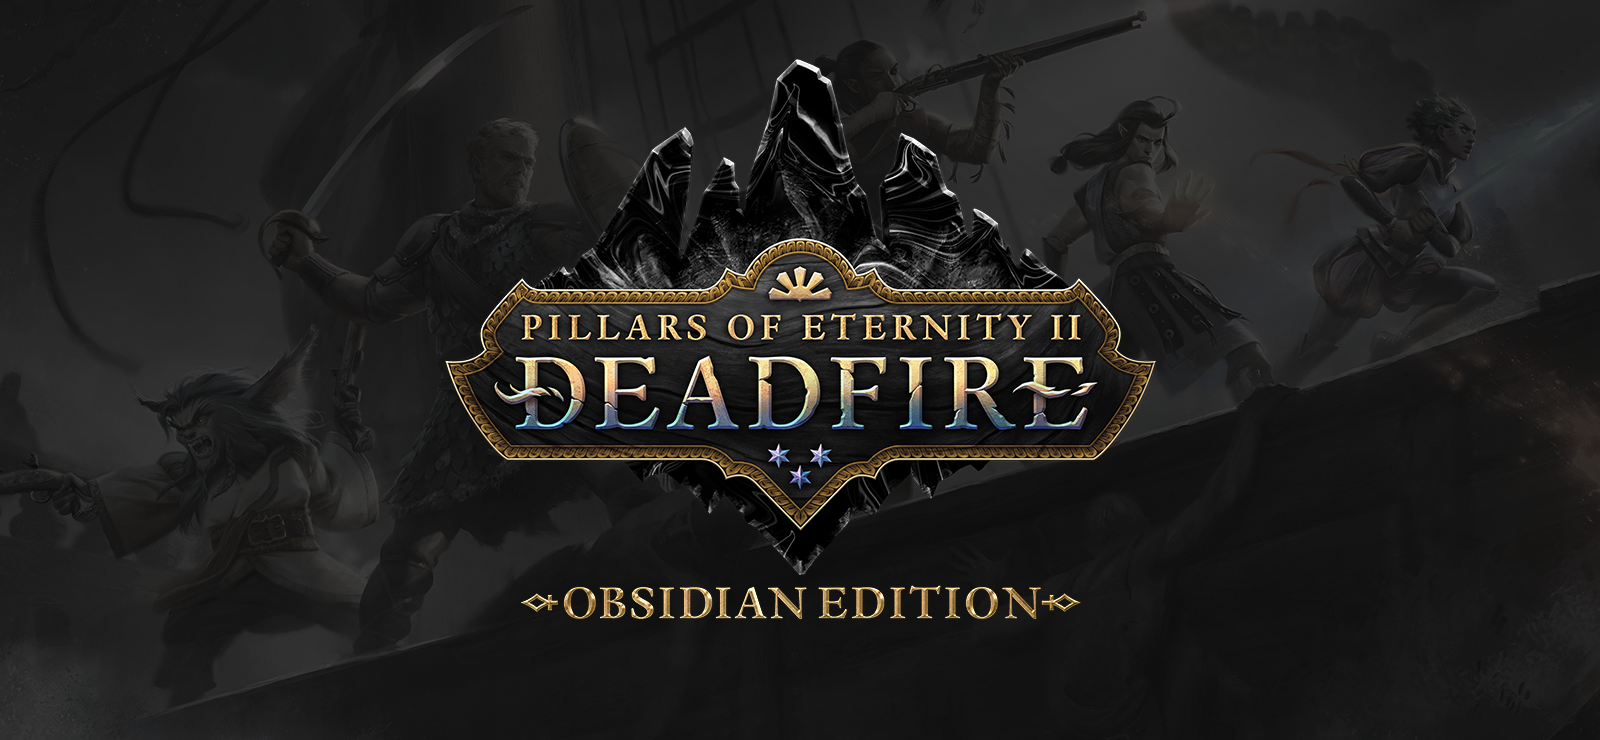 Pillars Of Eternity II: Deadfire - Obsidian Edition